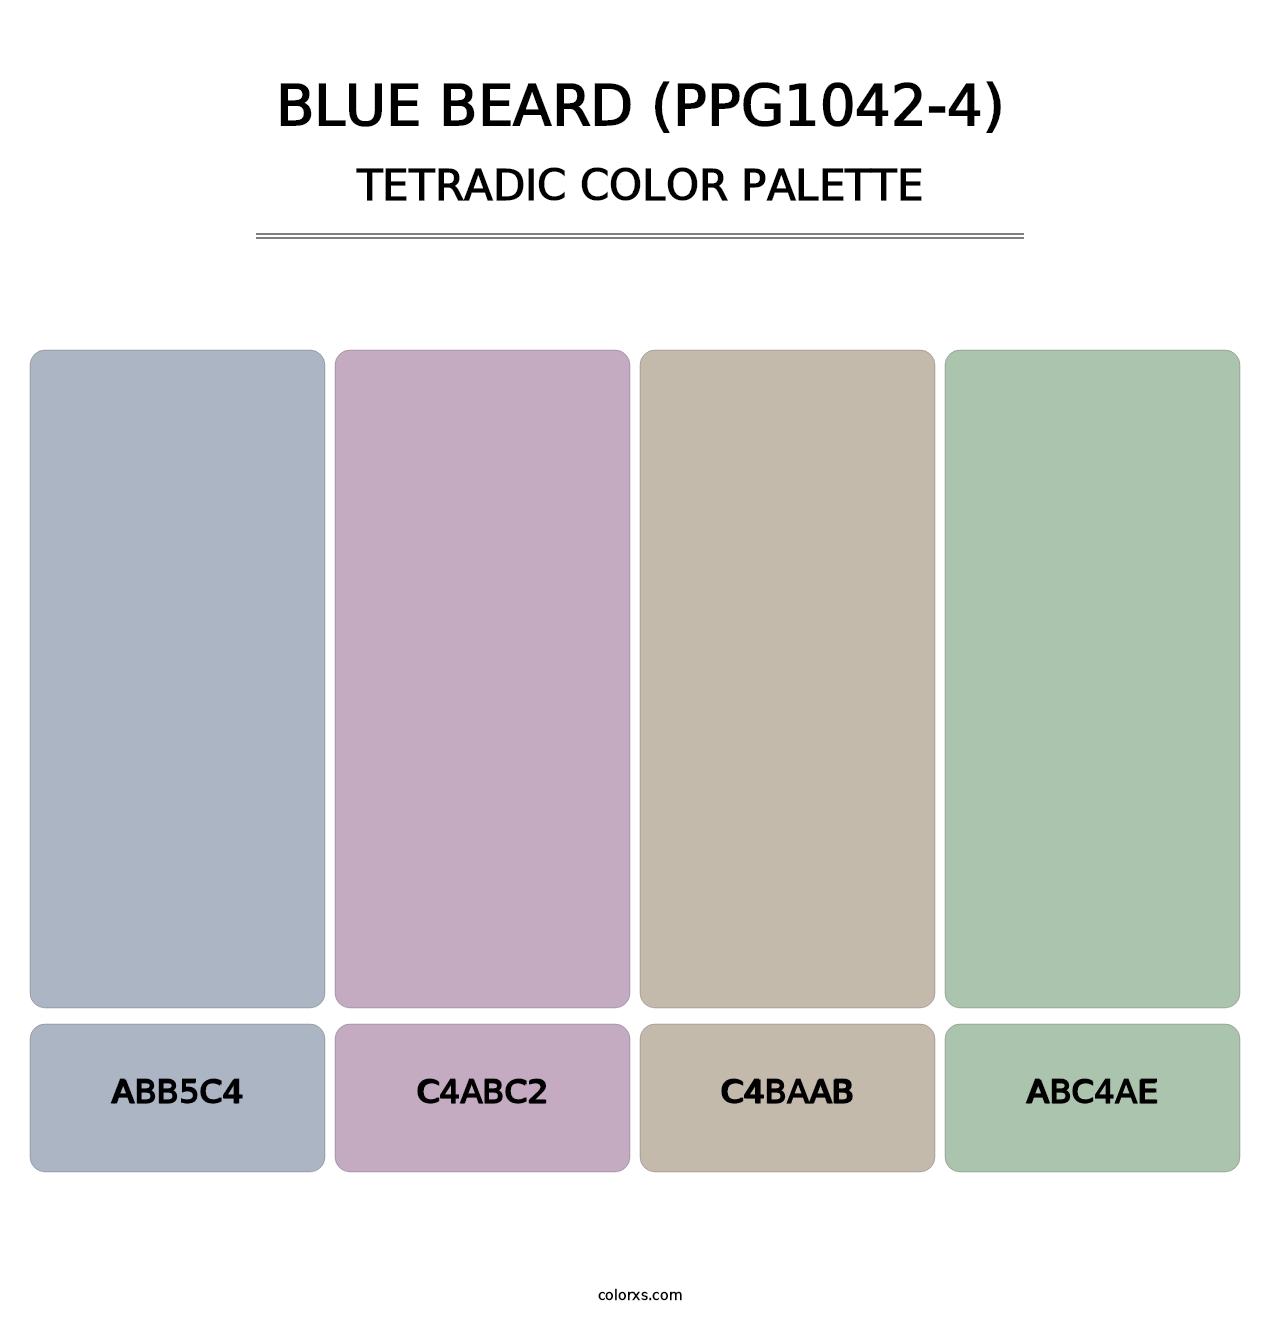 Blue Beard (PPG1042-4) - Tetradic Color Palette